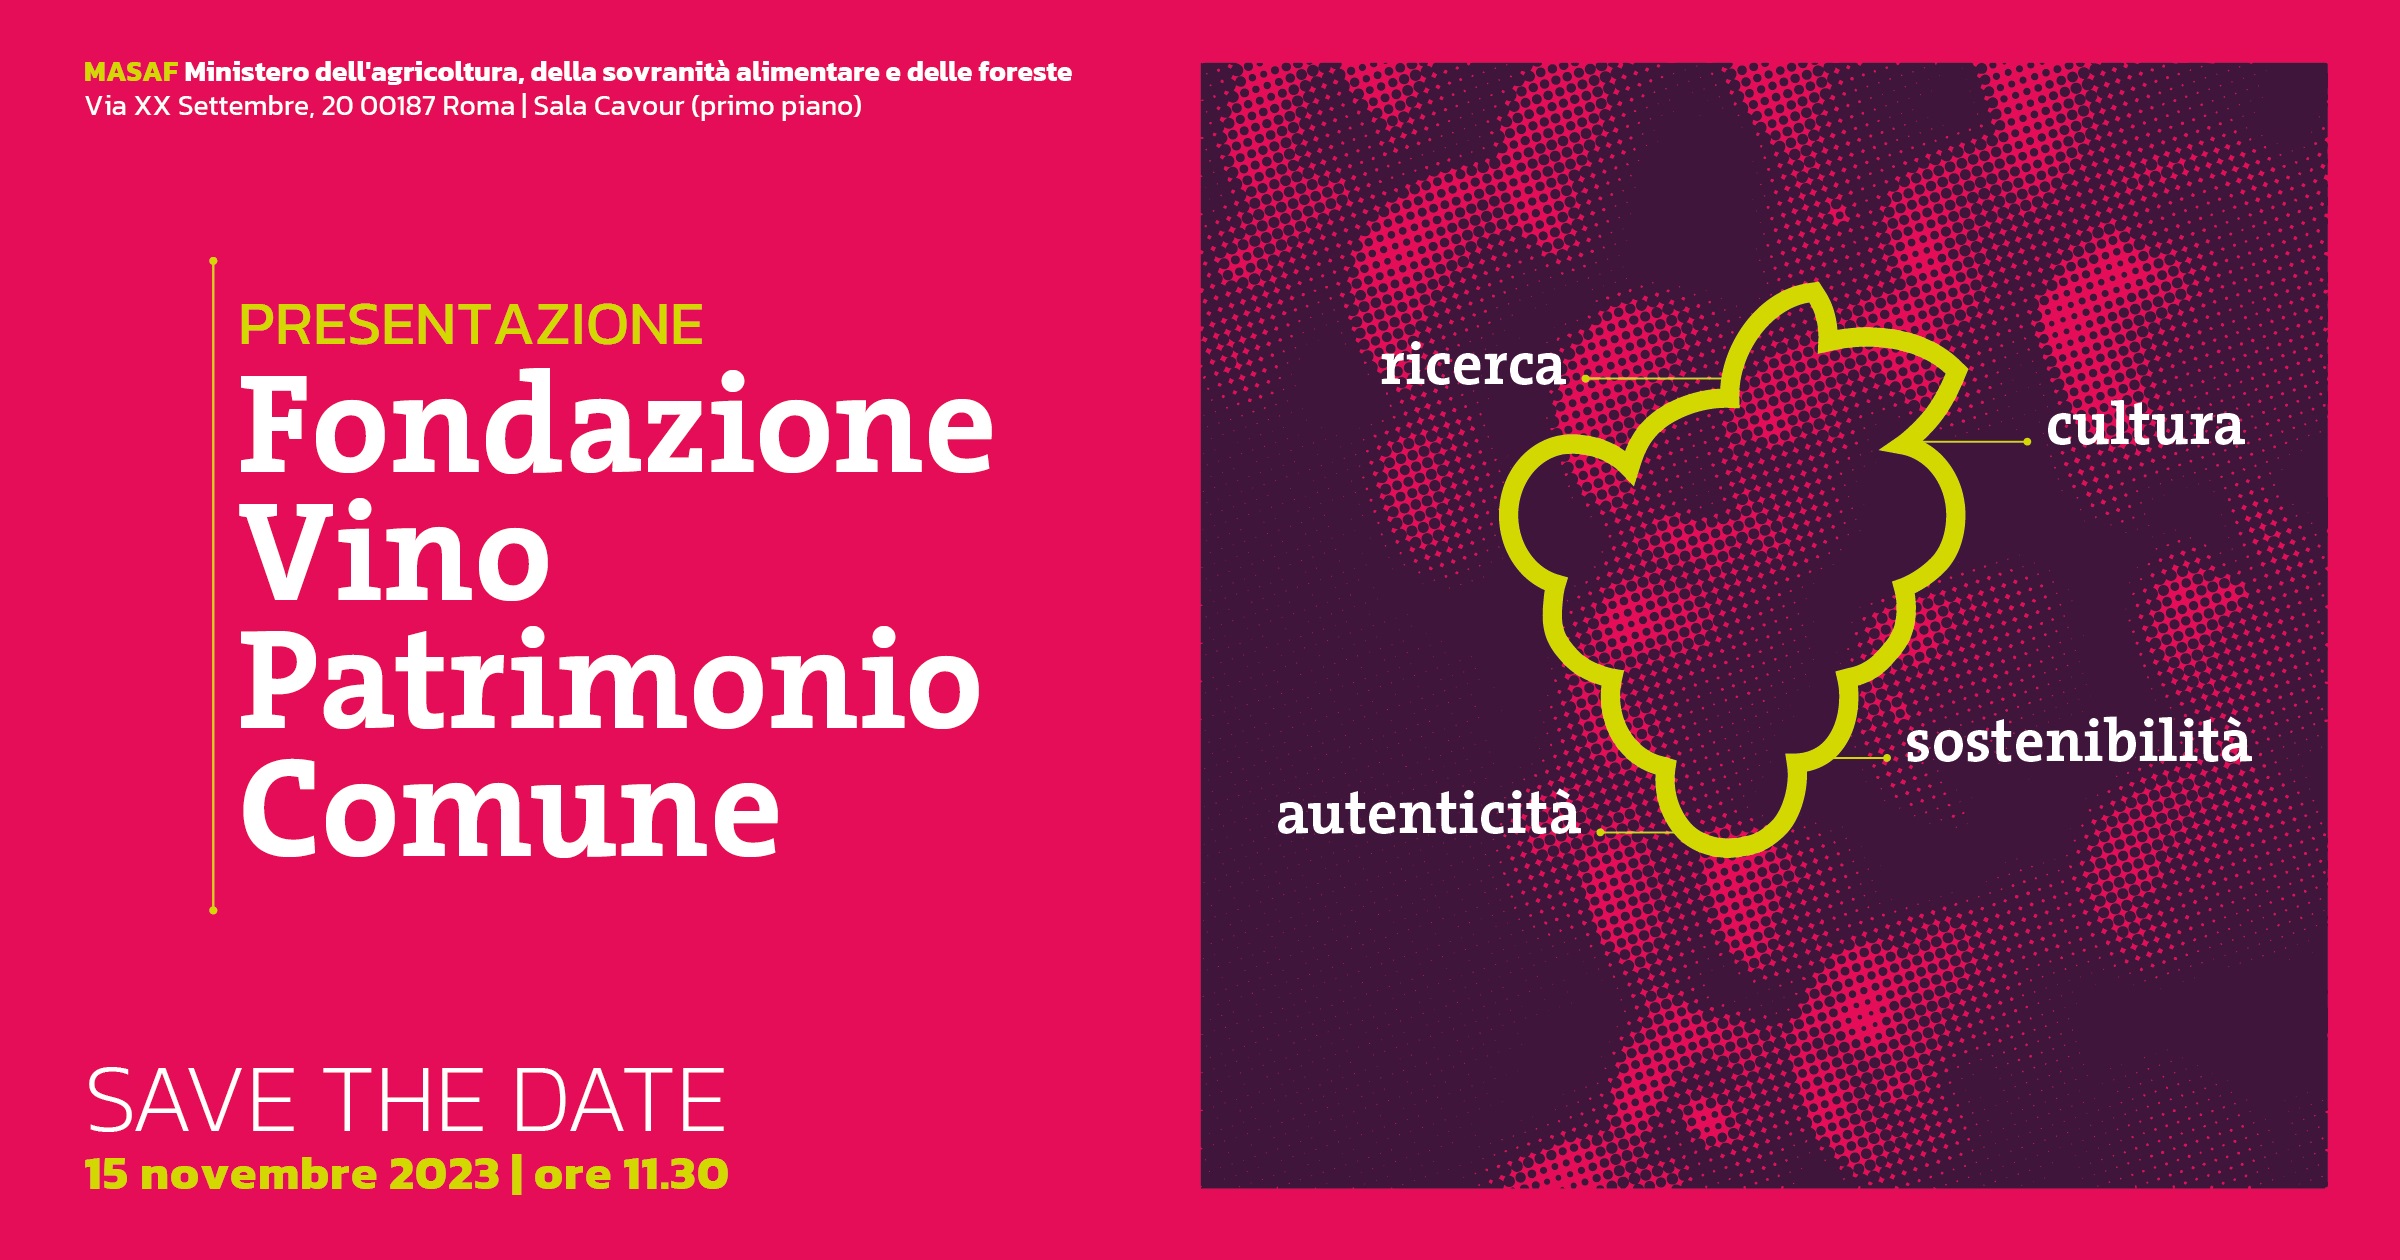 BREXIT: Dogane e scambi commerciali - nuovi adempimenti per i vini Made in Italy